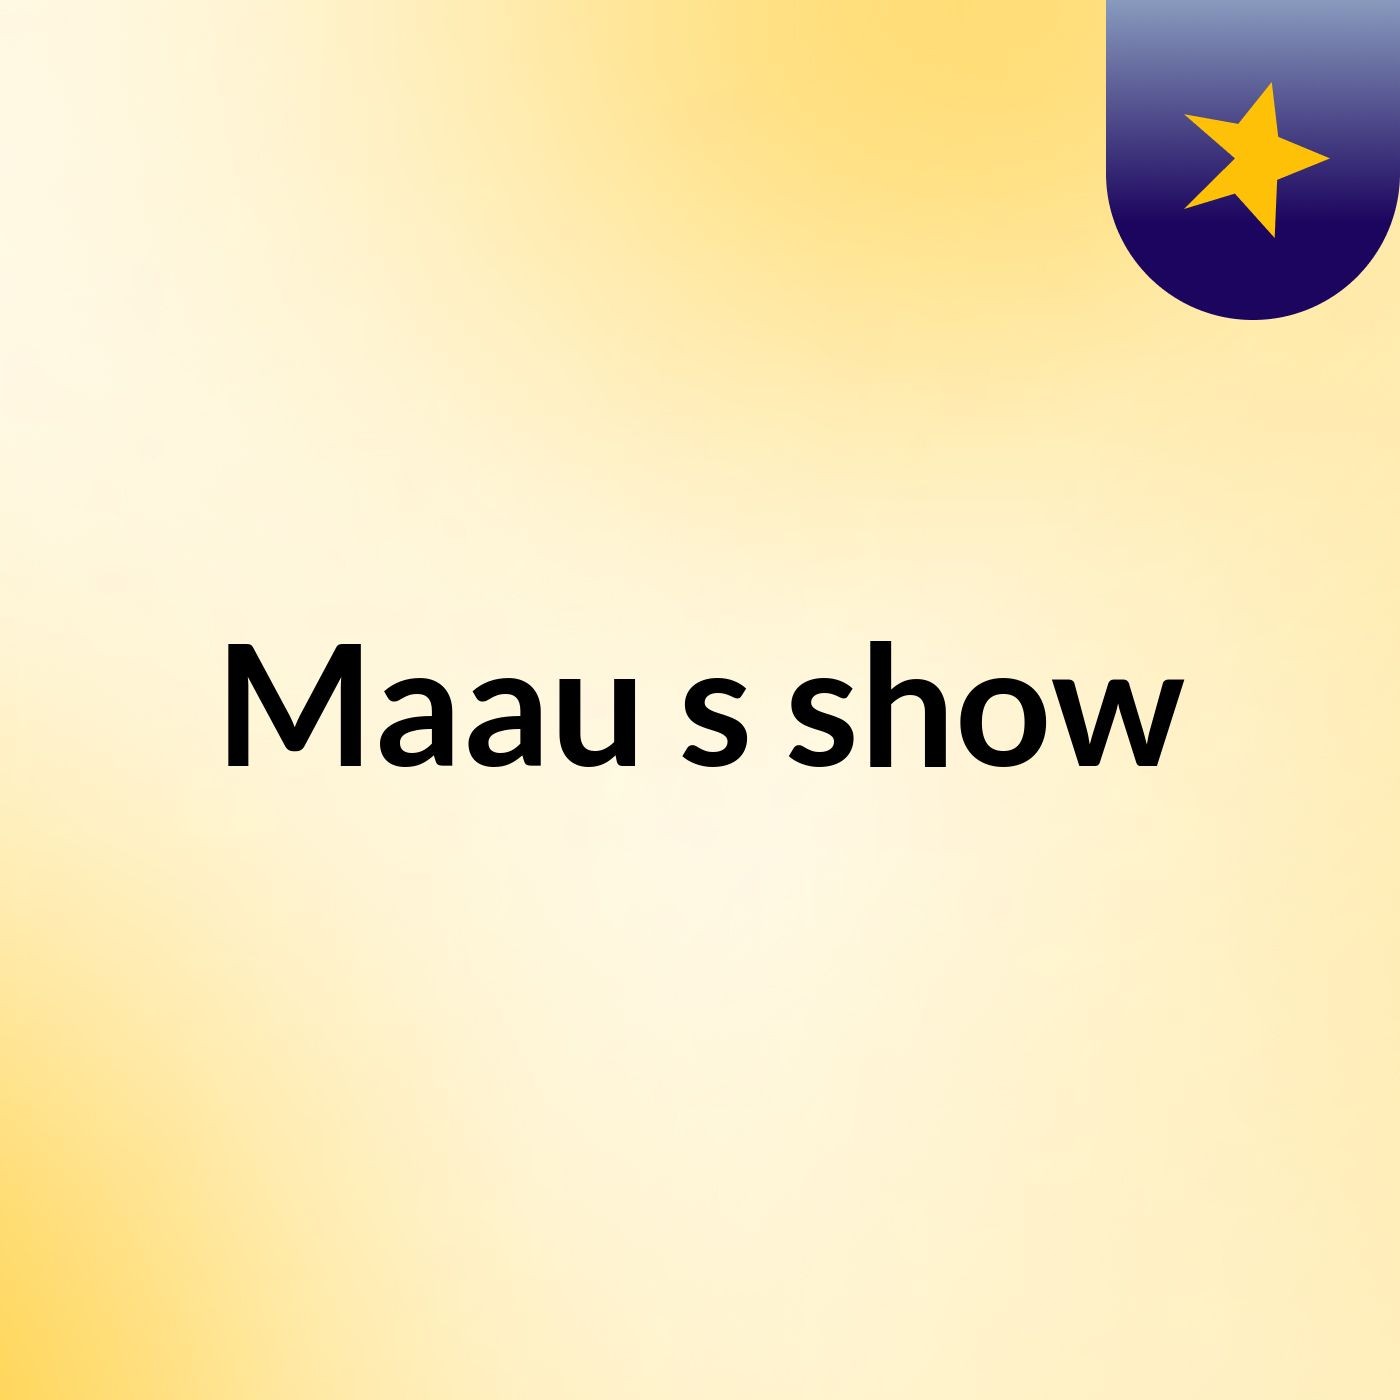 Maau's show